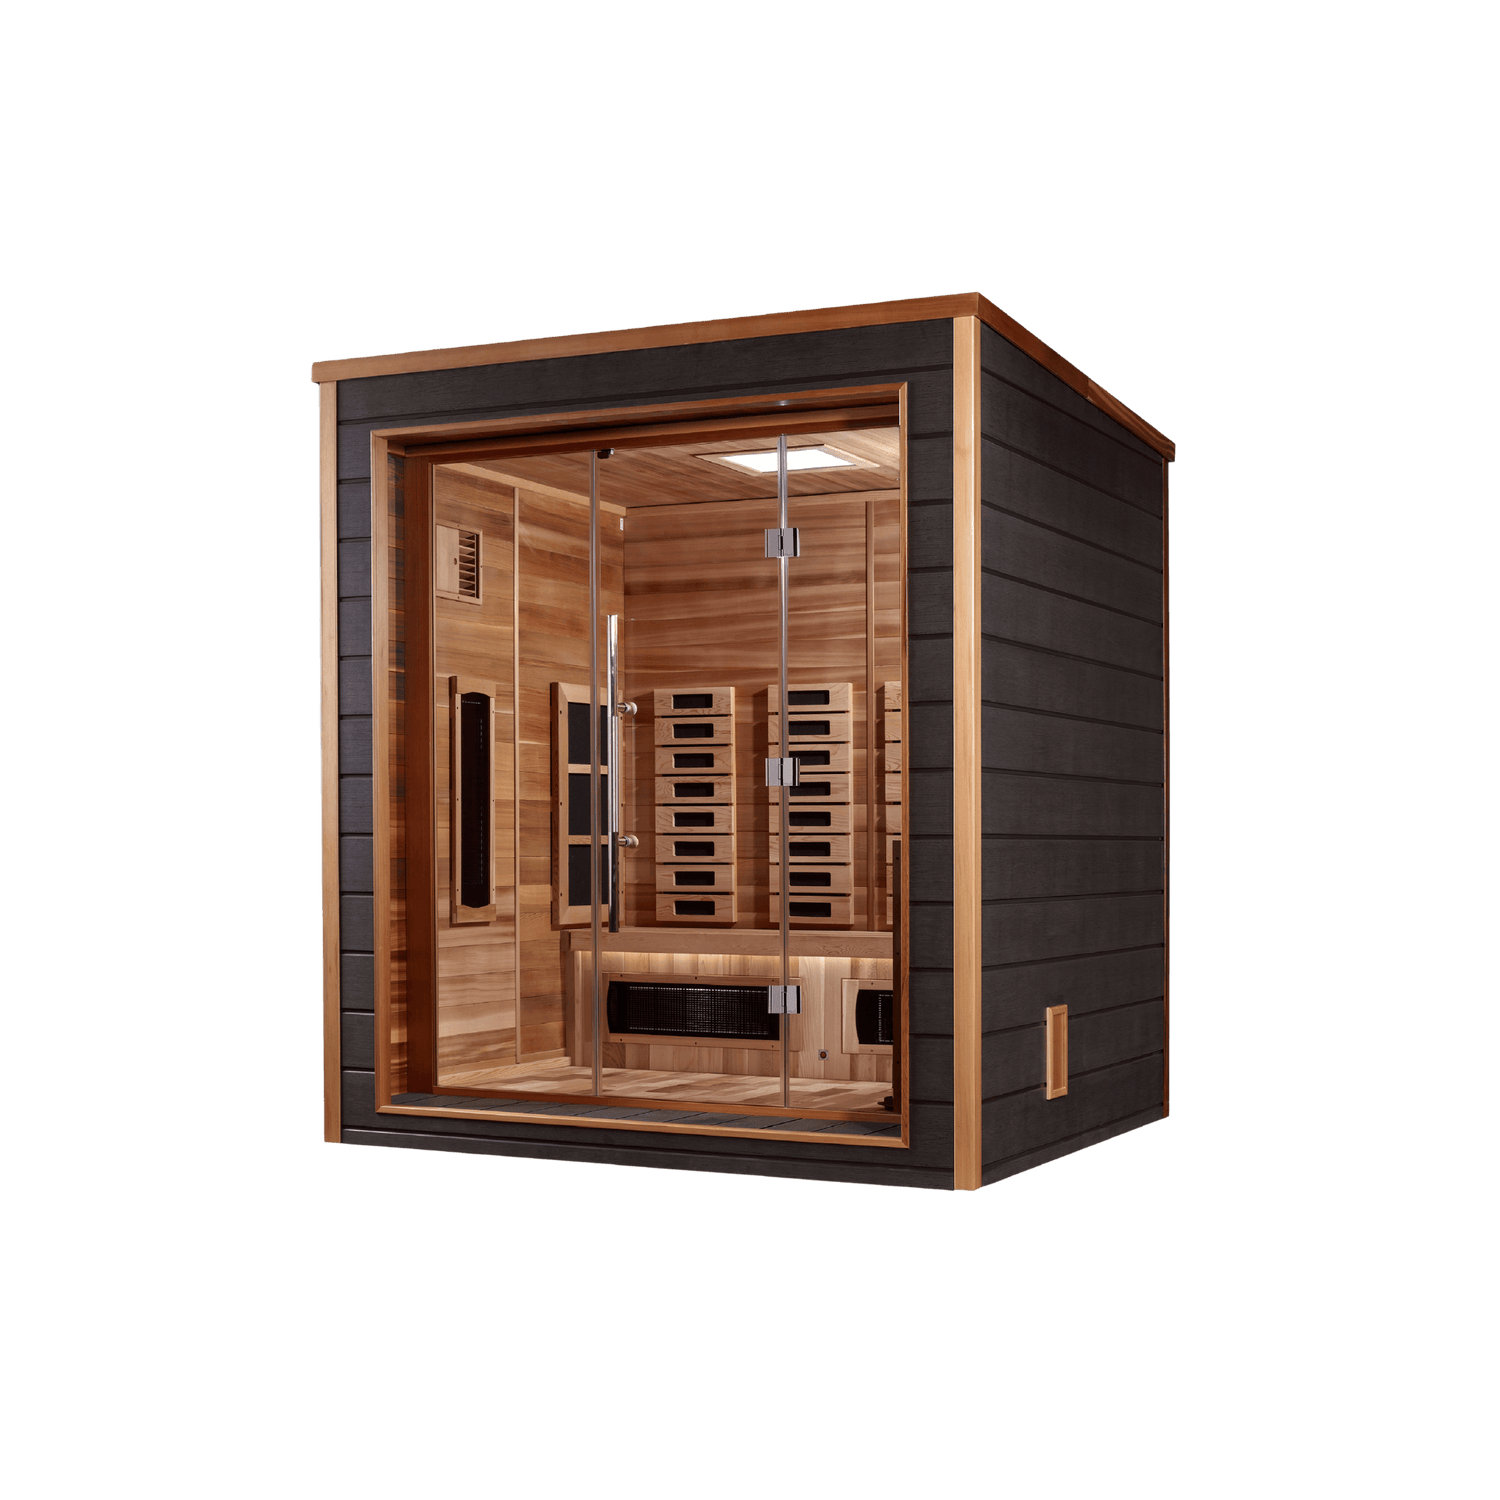 Outdoor Hybrid Sauna - Cold Plunge Guys